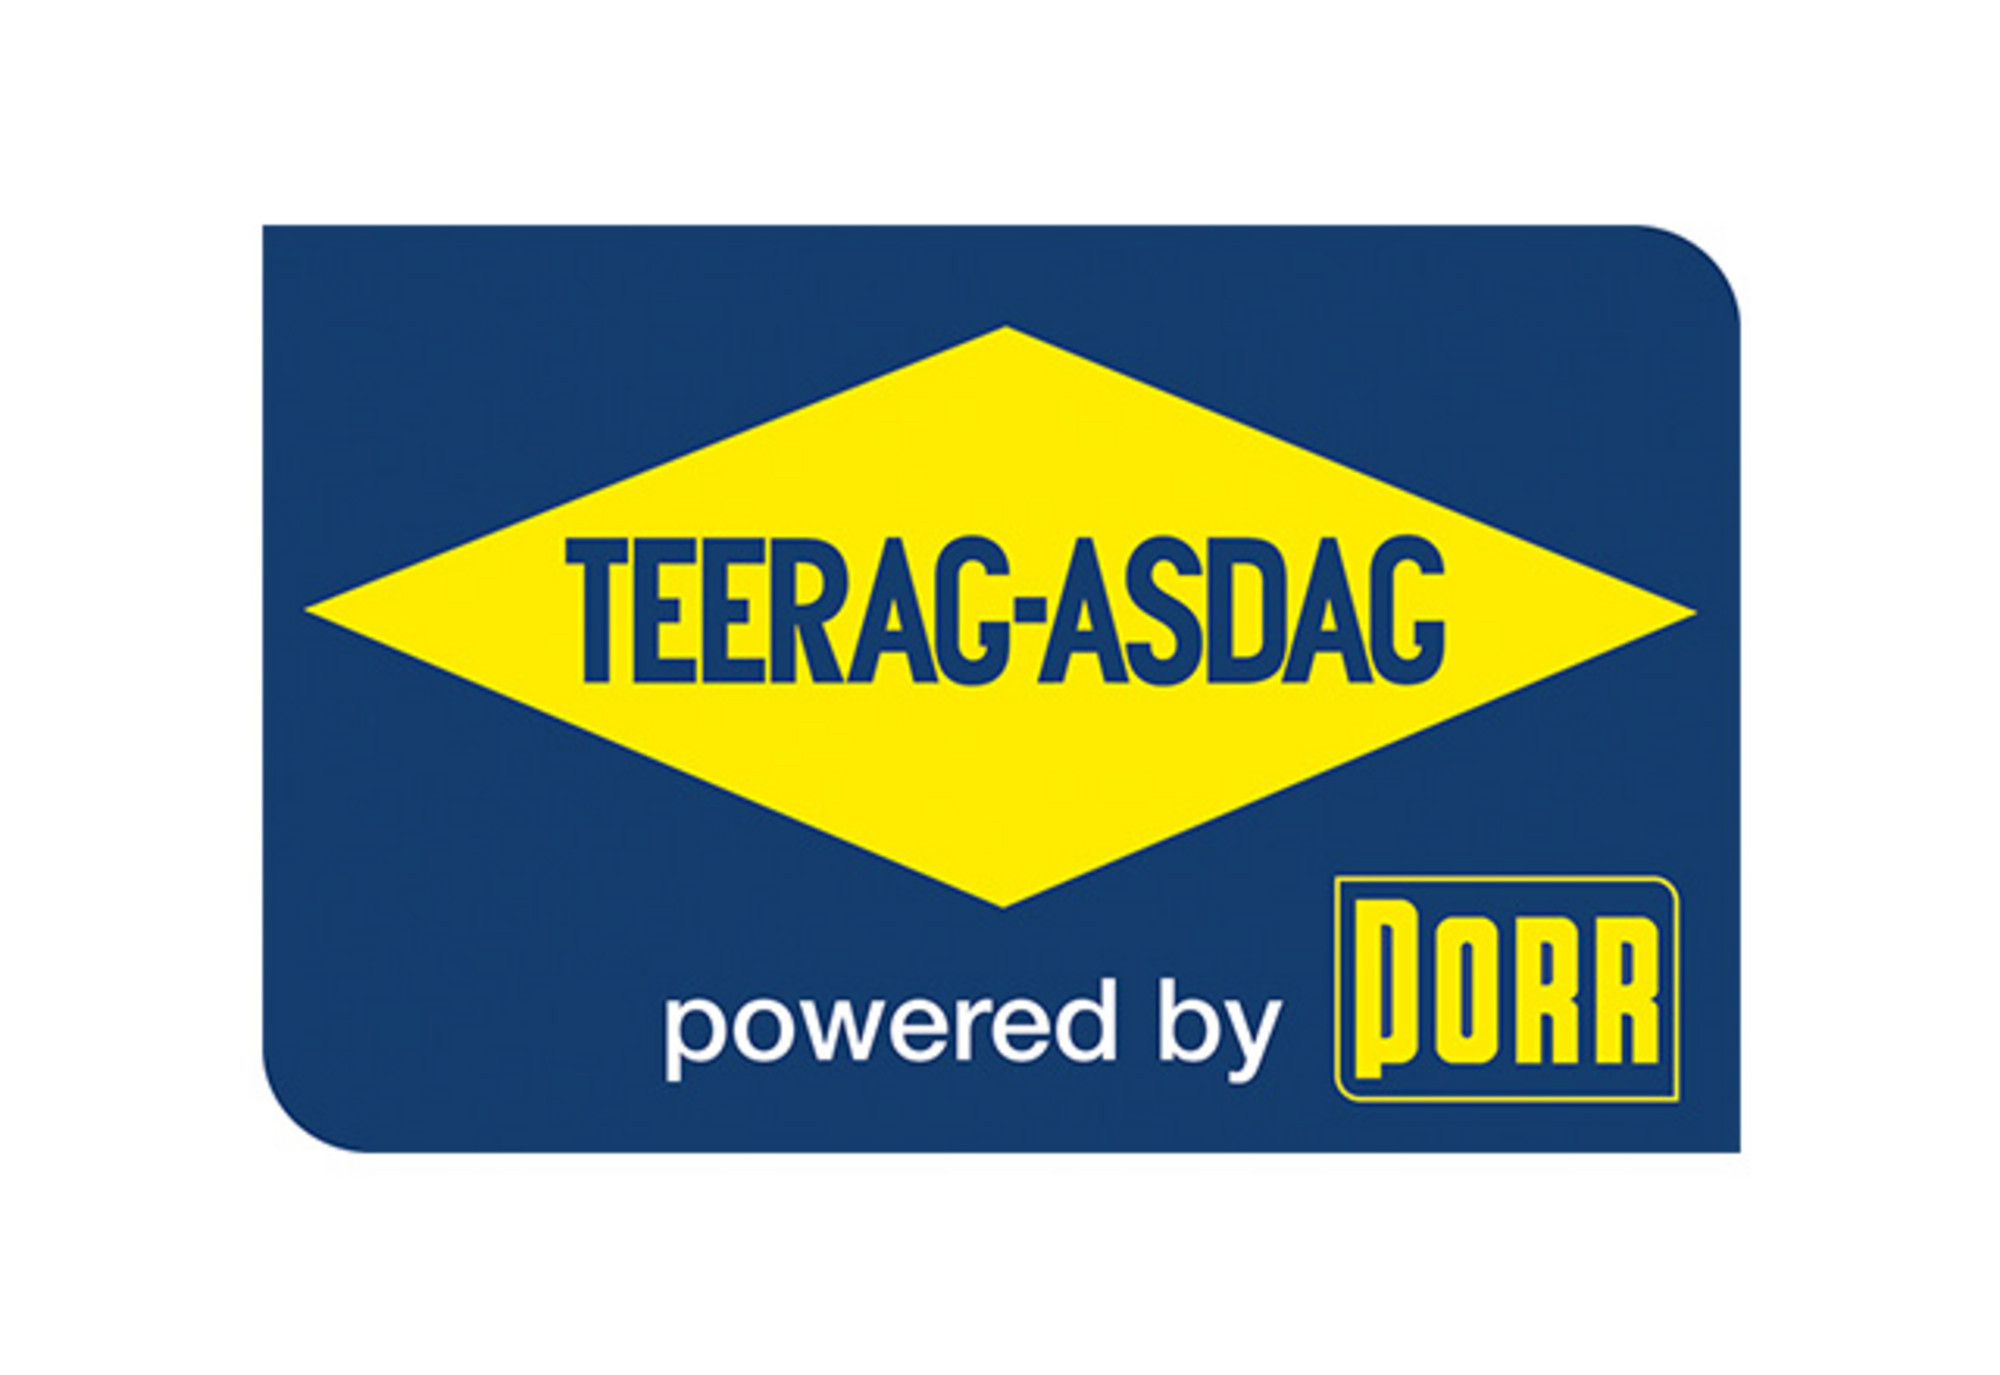 Teerag Asdag powerd by PORR